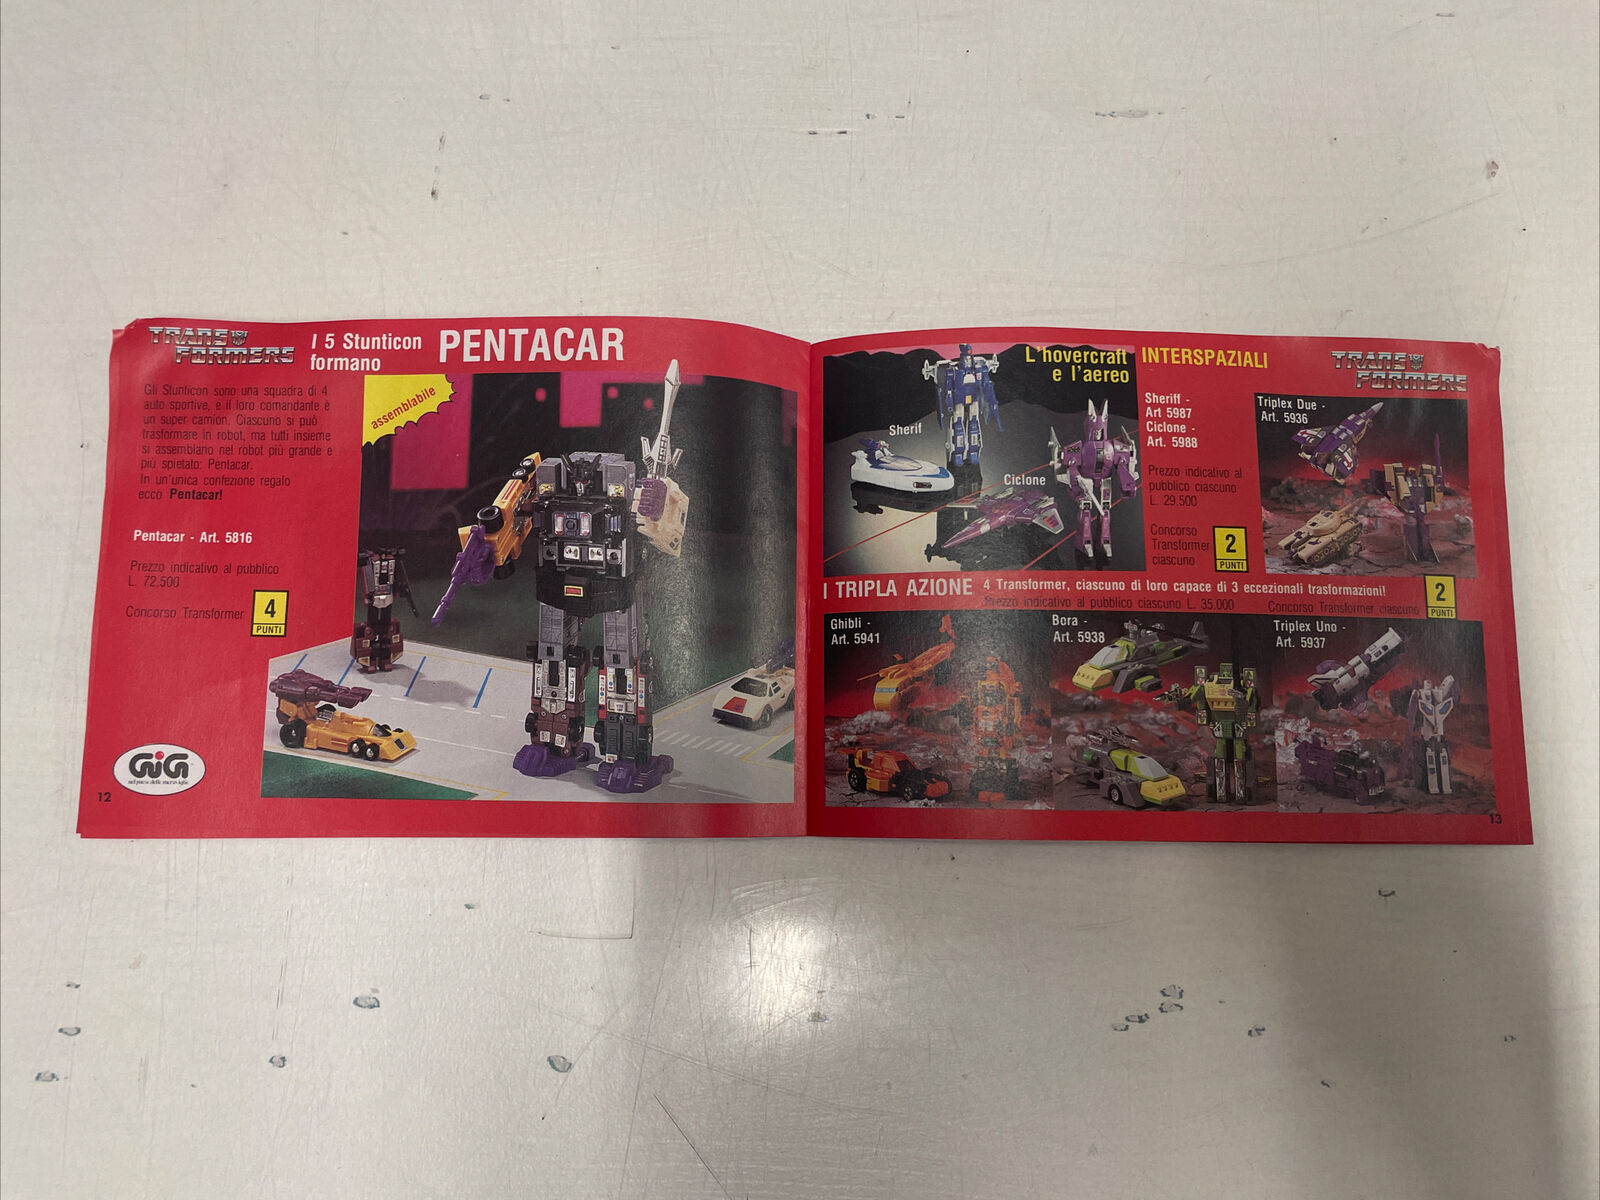 Transformers-catalogo-Anni-80-GIG-Giochiamo-a-Trasformer-145340679071-7